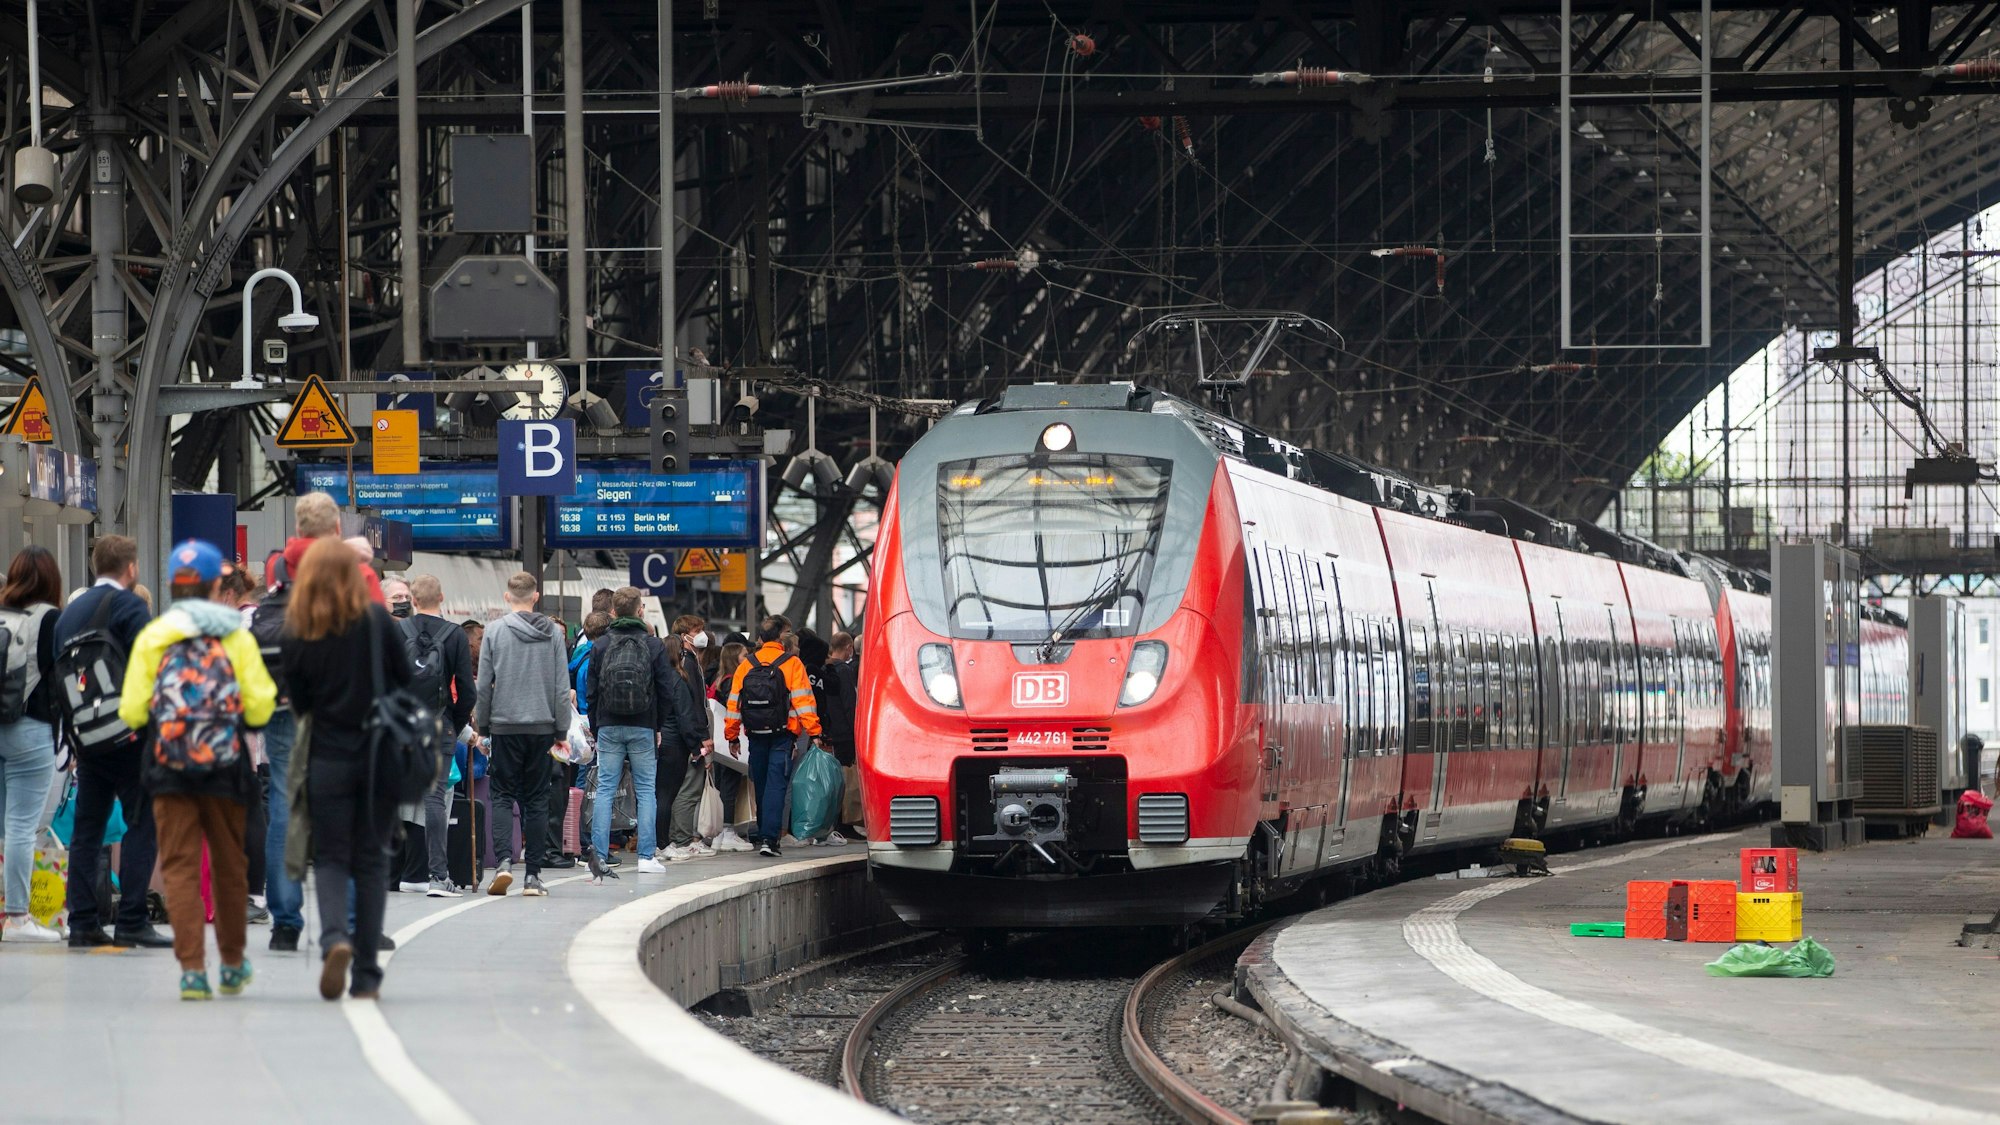 Bahnreisende warten auf dem Bahnsteig auf die Einfahrt des Zuges im Kölner Hauptbahnhof.